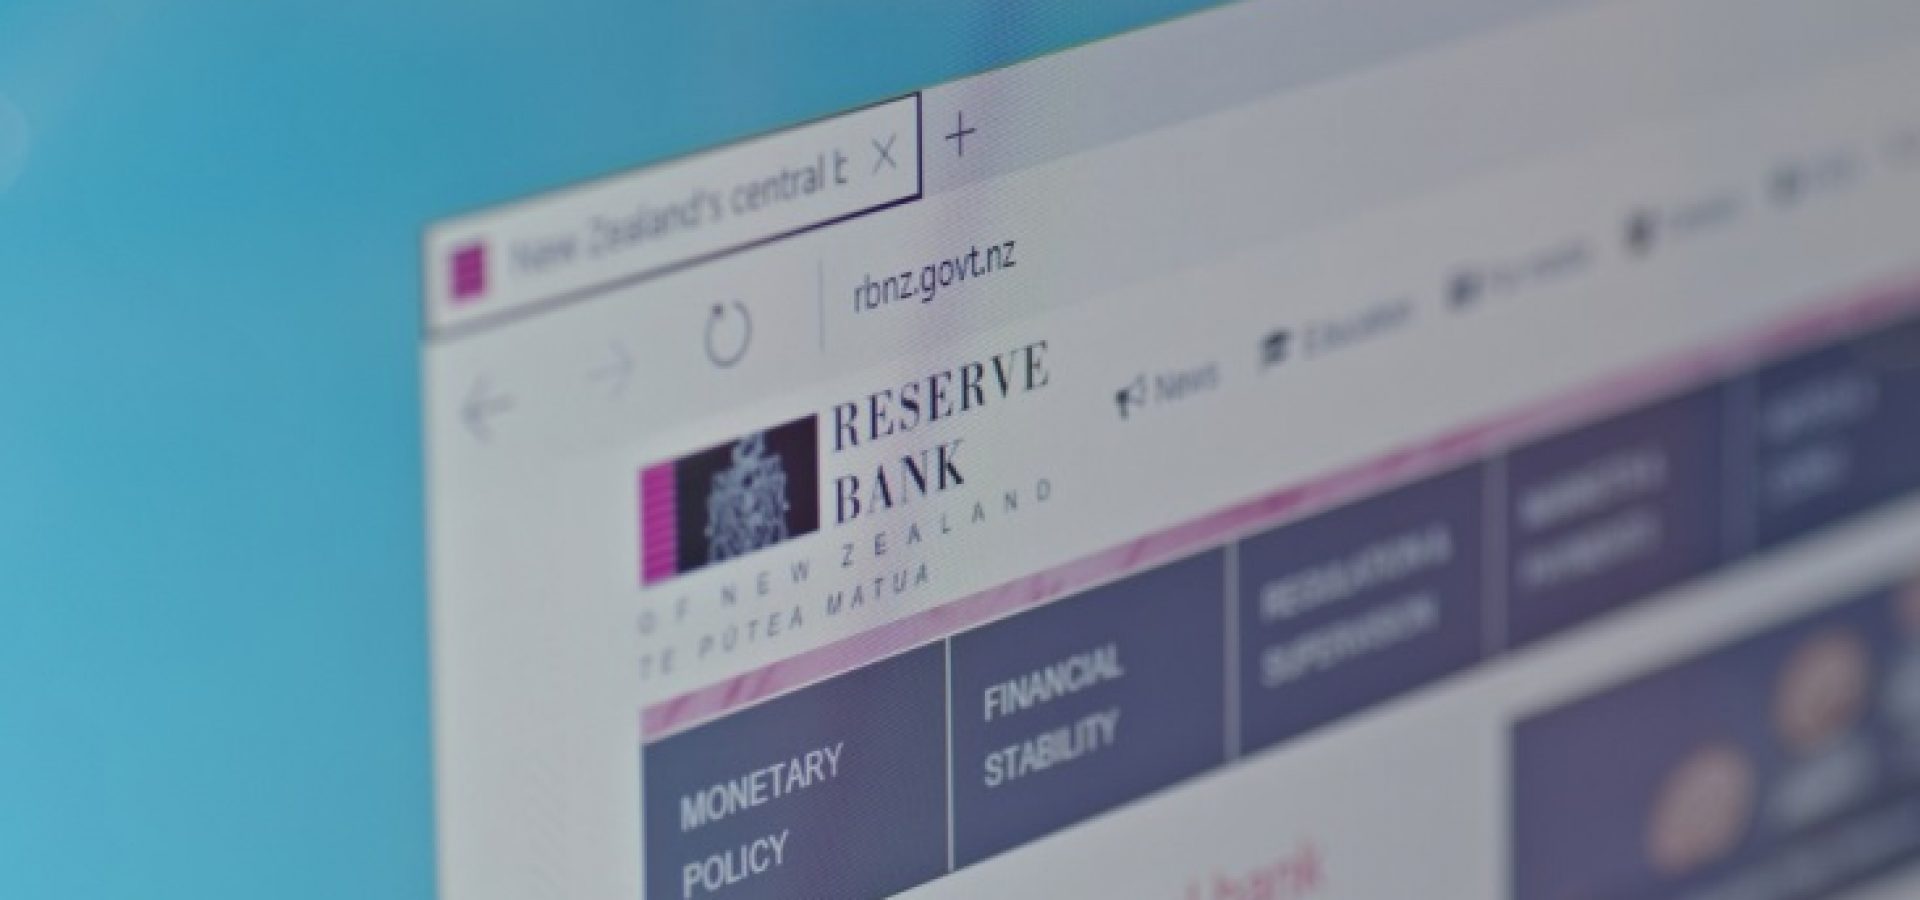 Reserve Bank of New Zealand website – WibestBroker